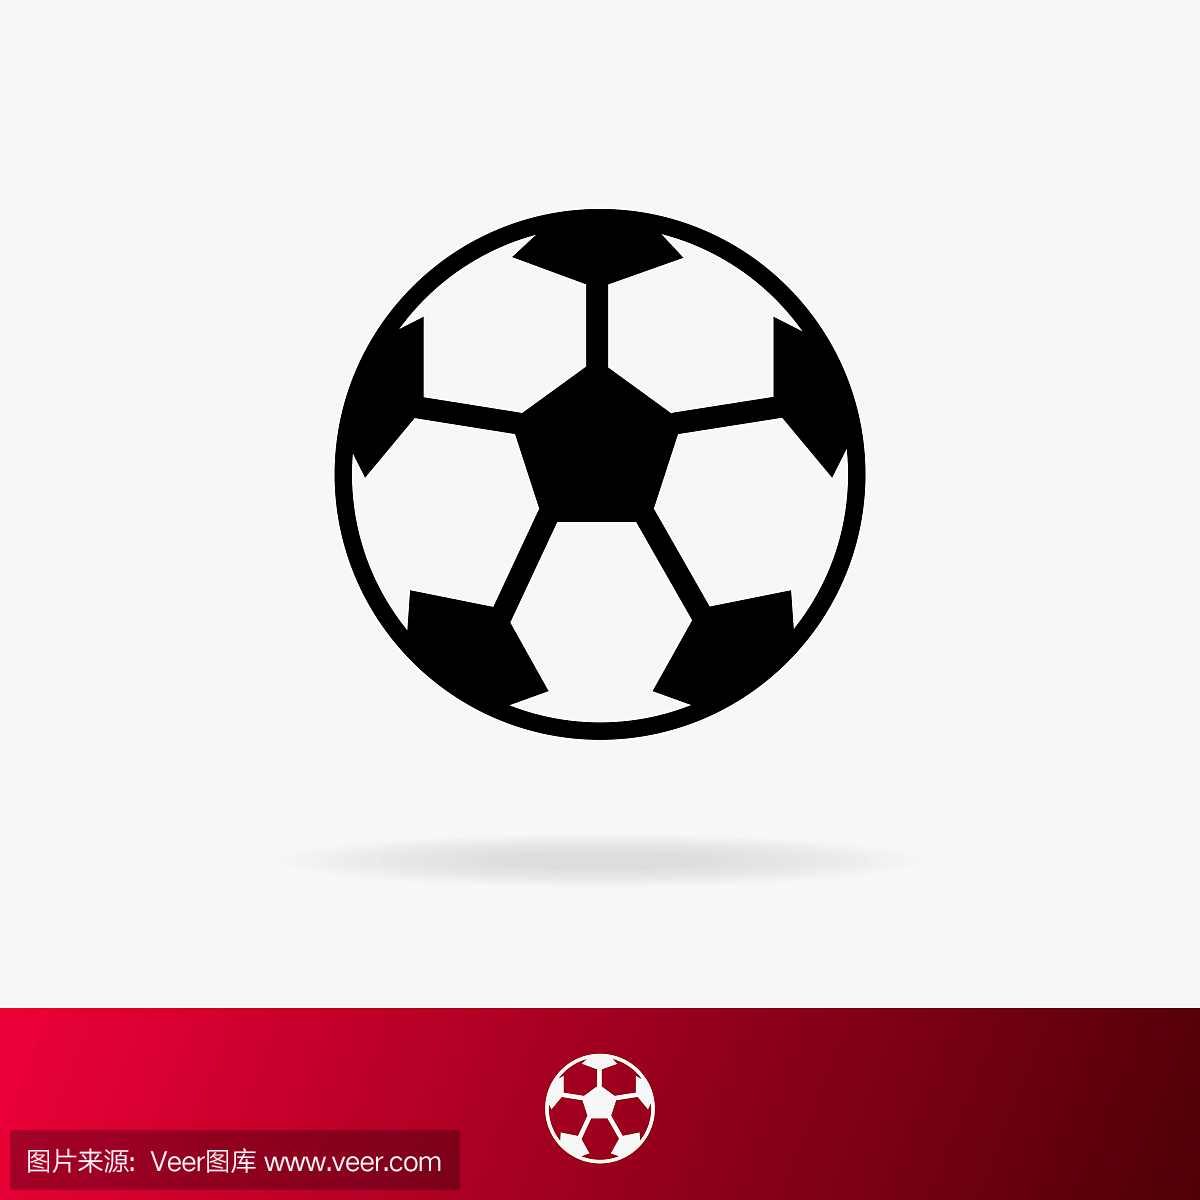 足球图标设置为比赛,足球杯符号背景上孤立的